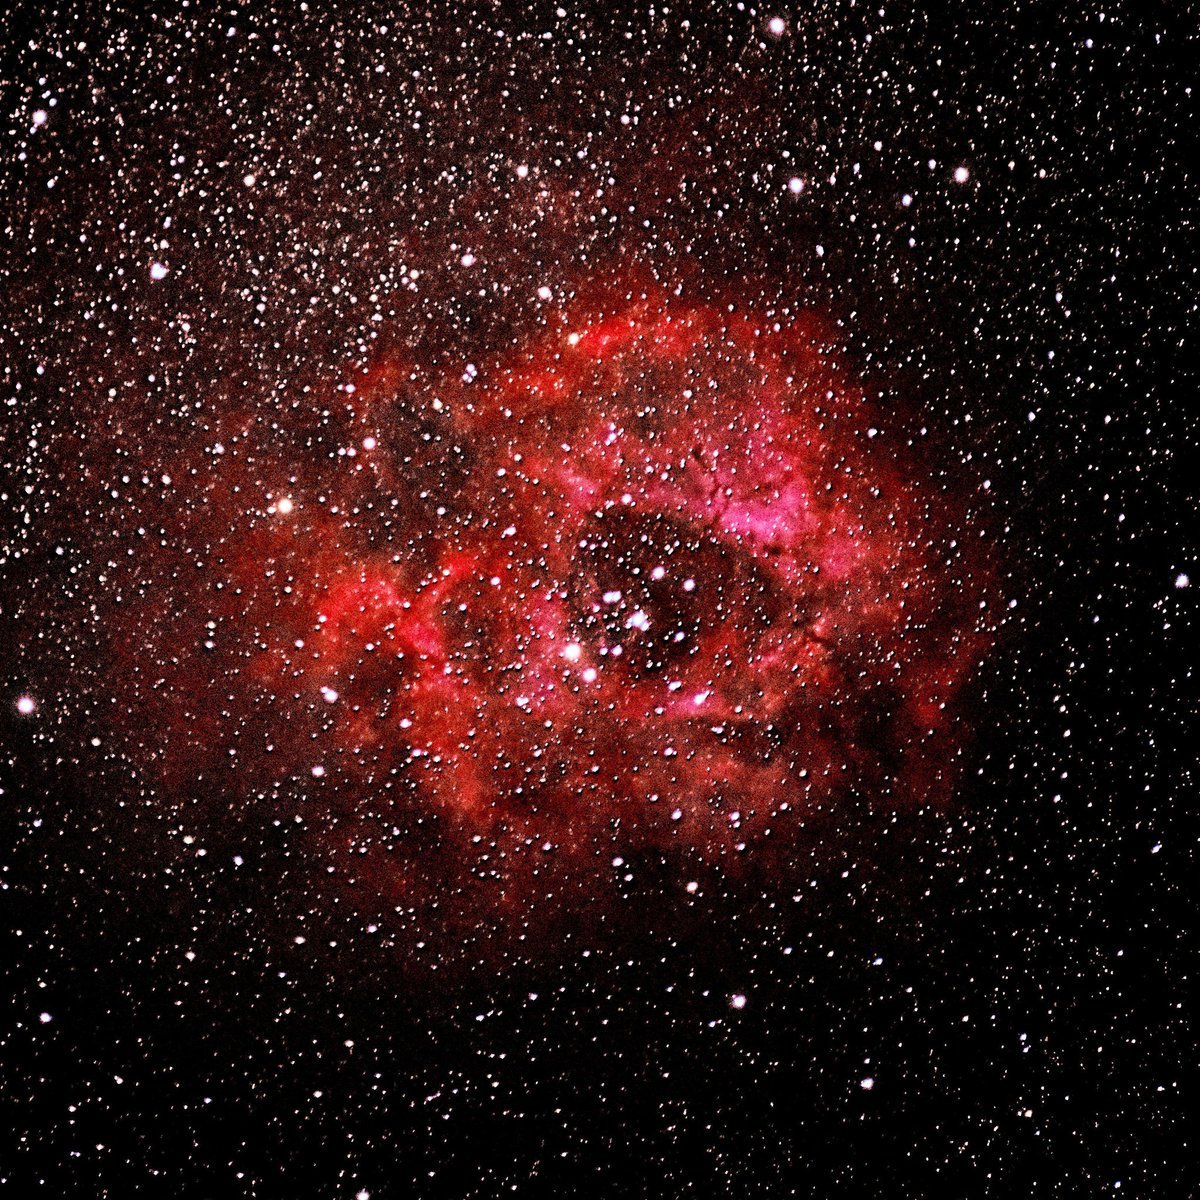 Erstaunlich, was man mit handelsüblichen Systemkameras so alles fotografieren kann. Rosette Nebula ist 5200 Lichtjahre von hier, von Auge nicht zu sehen. Mit Nachführgerät. 
#rosettenebula #Astrophotography #thun #switzerland #nightphotography #nightsky